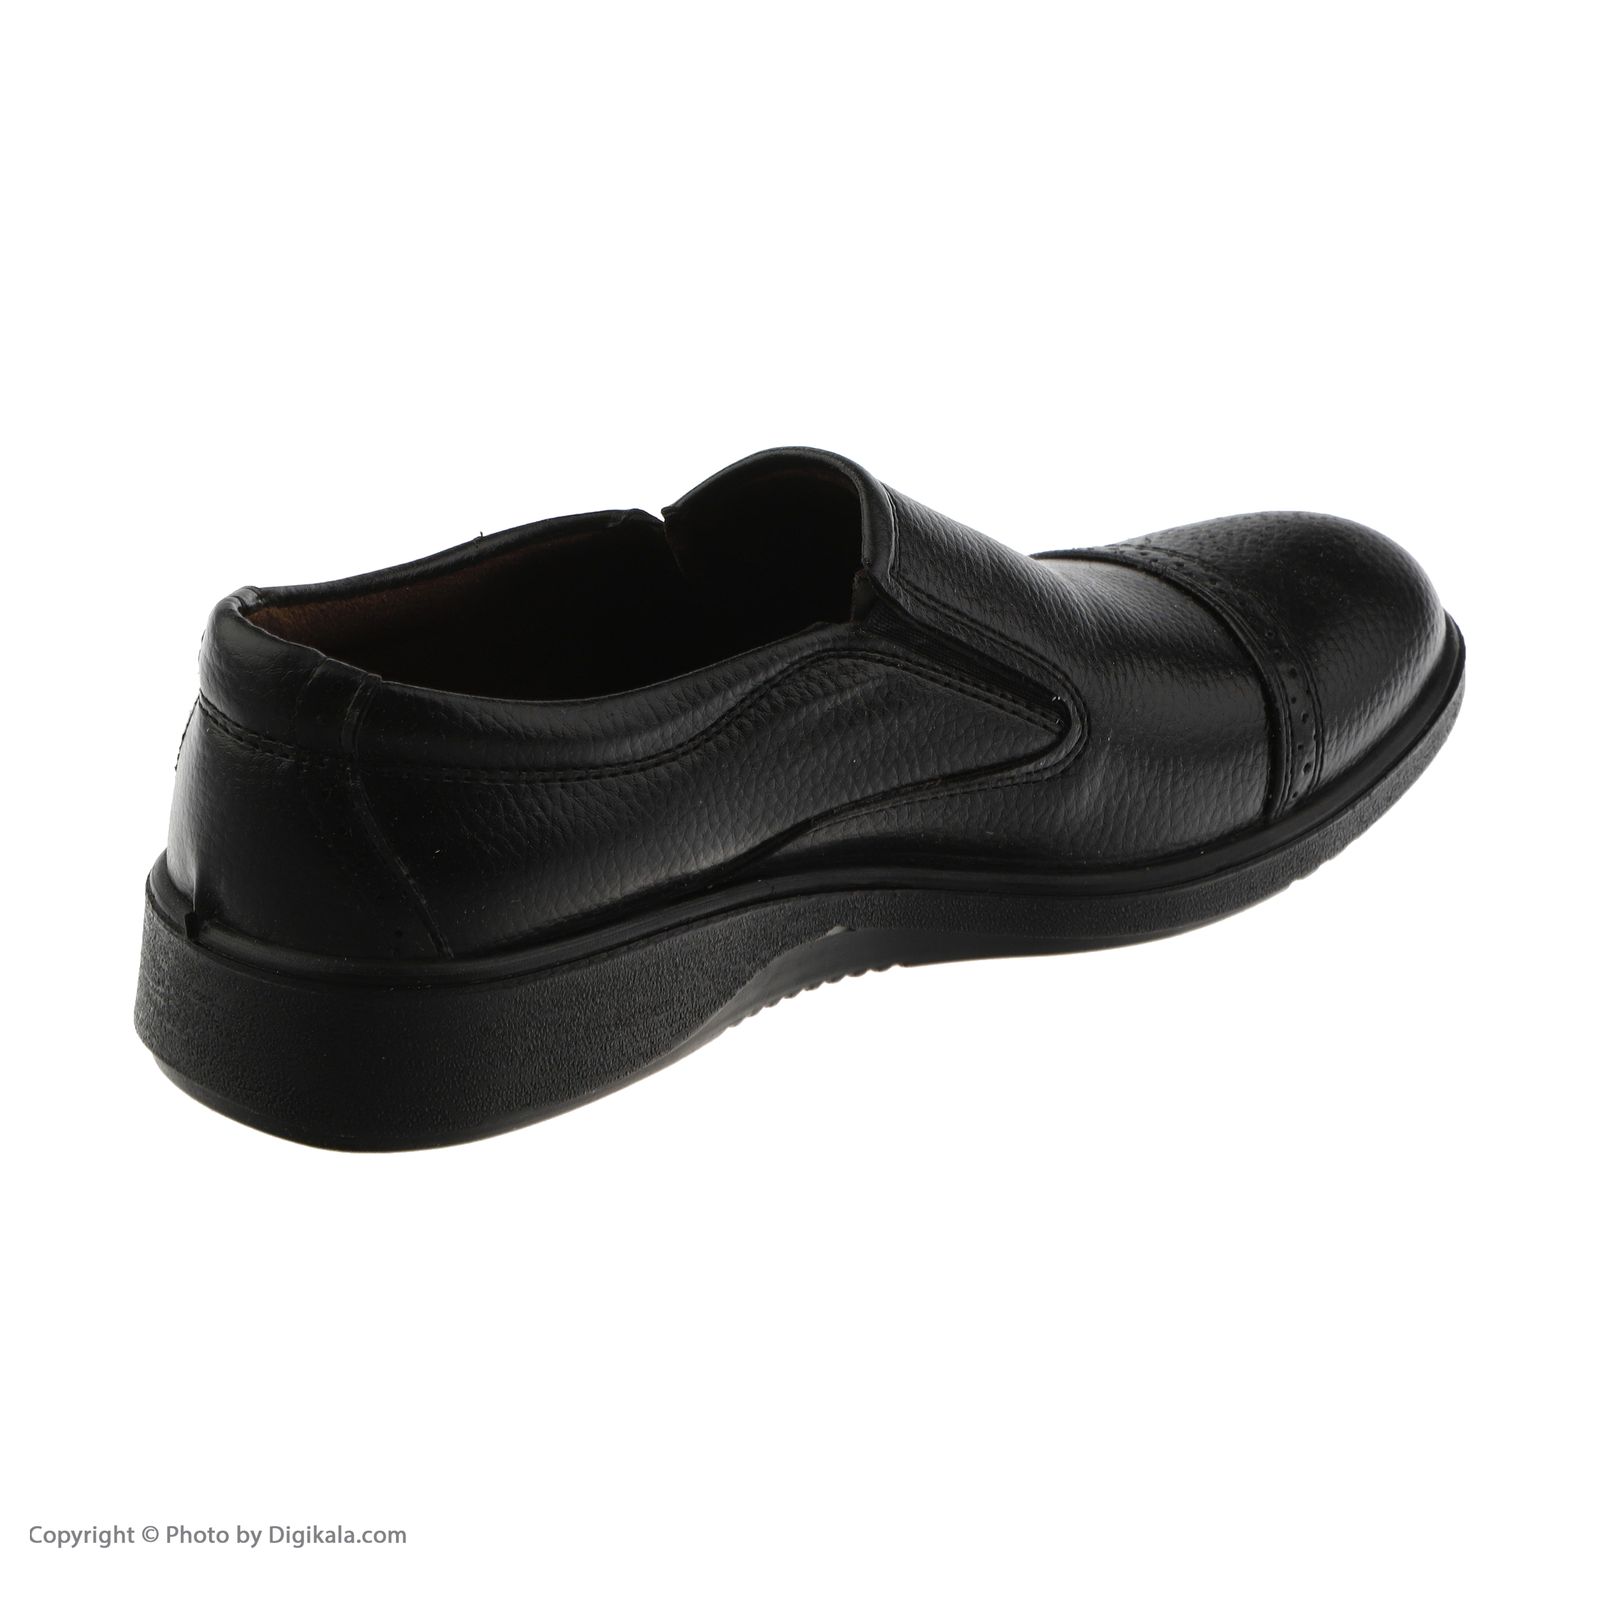 کفش روزمره مردانه کروماکی مدل طبی چرم مصنوعی فلوتر کد 1002 -  - 5